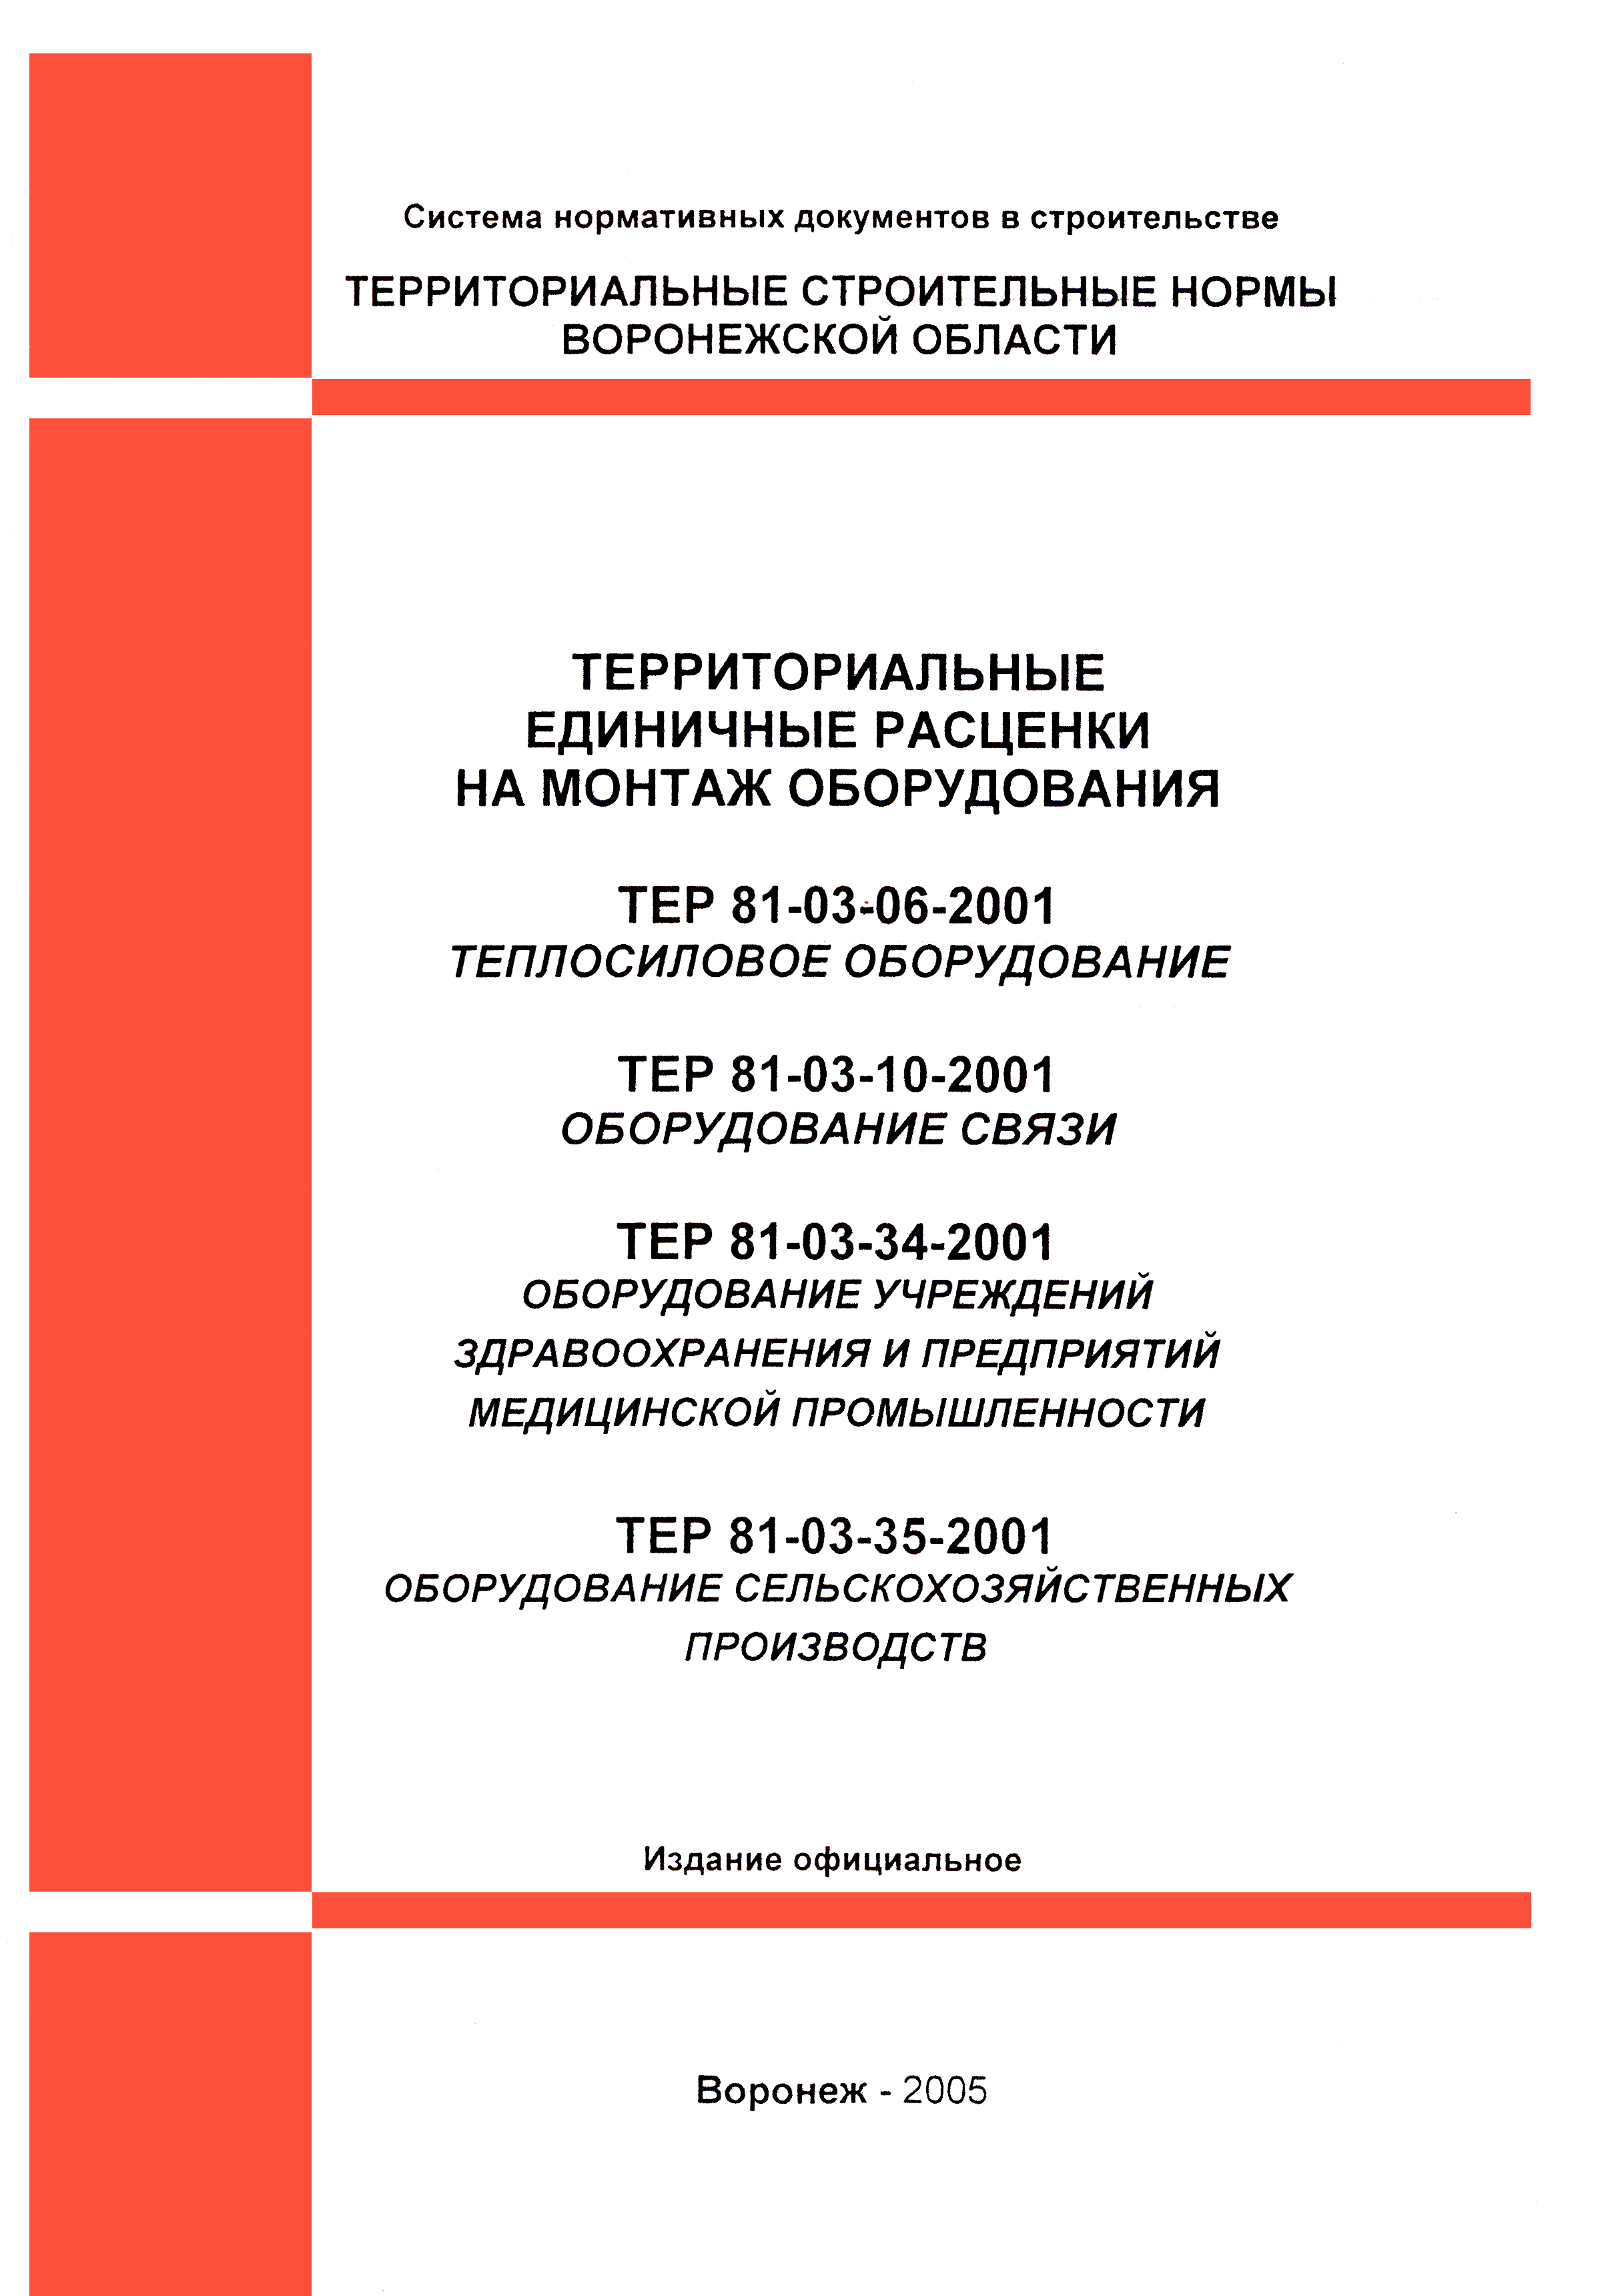 ТЕРм Воронежская область 81-03-10-2001